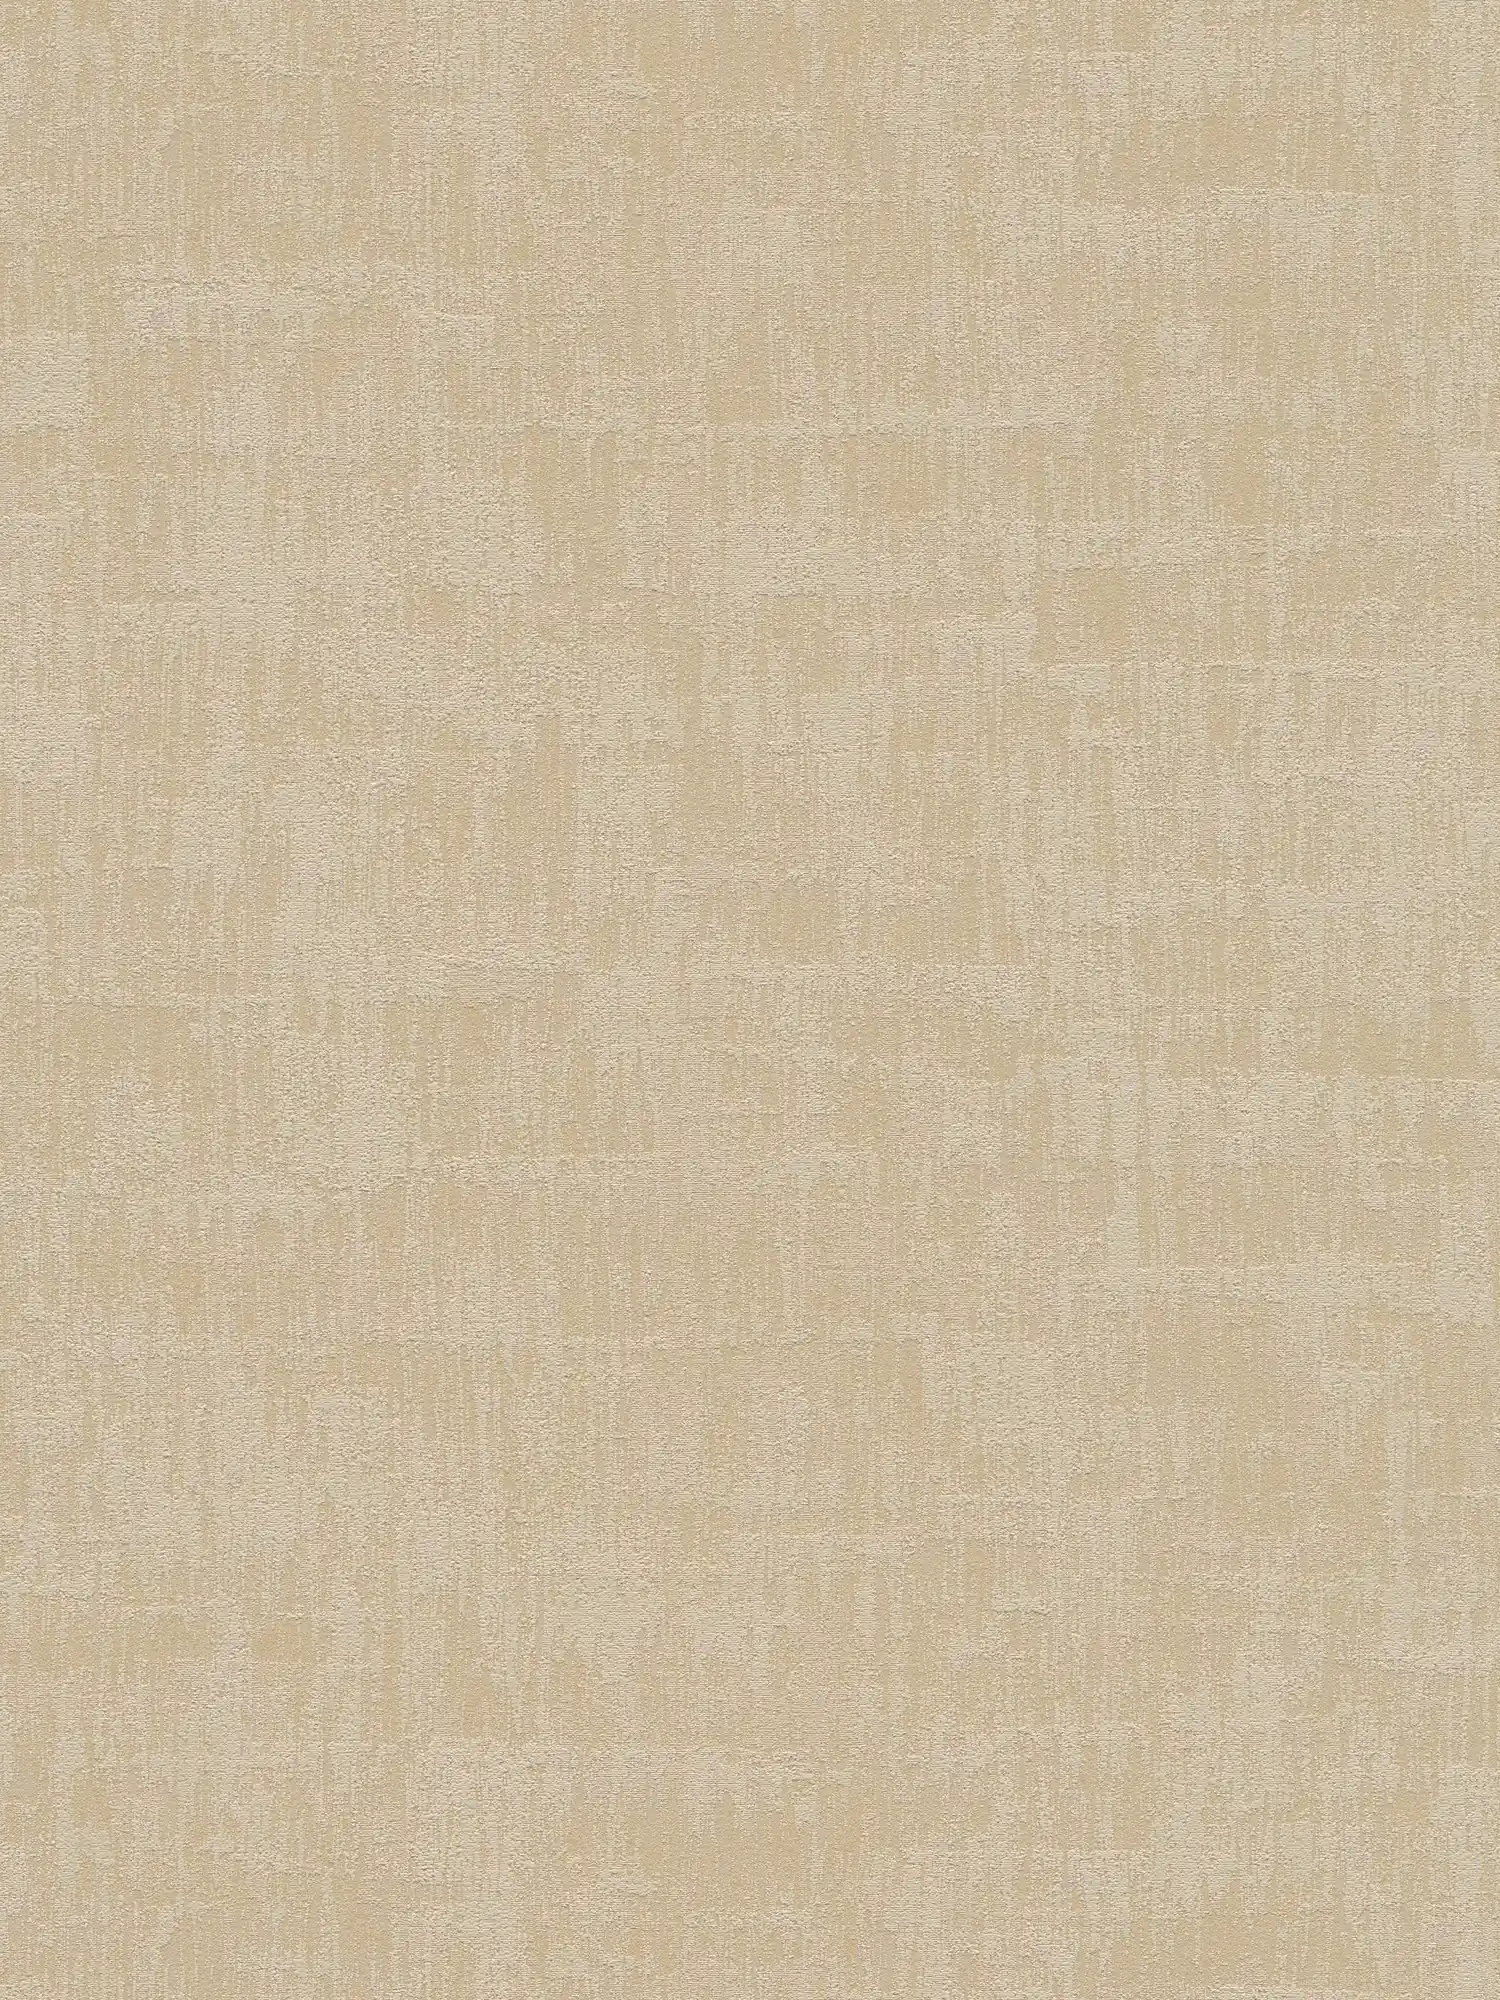 Onderlaag behang met abstract raffia patroon in zachte kleuren - beige, taupe
